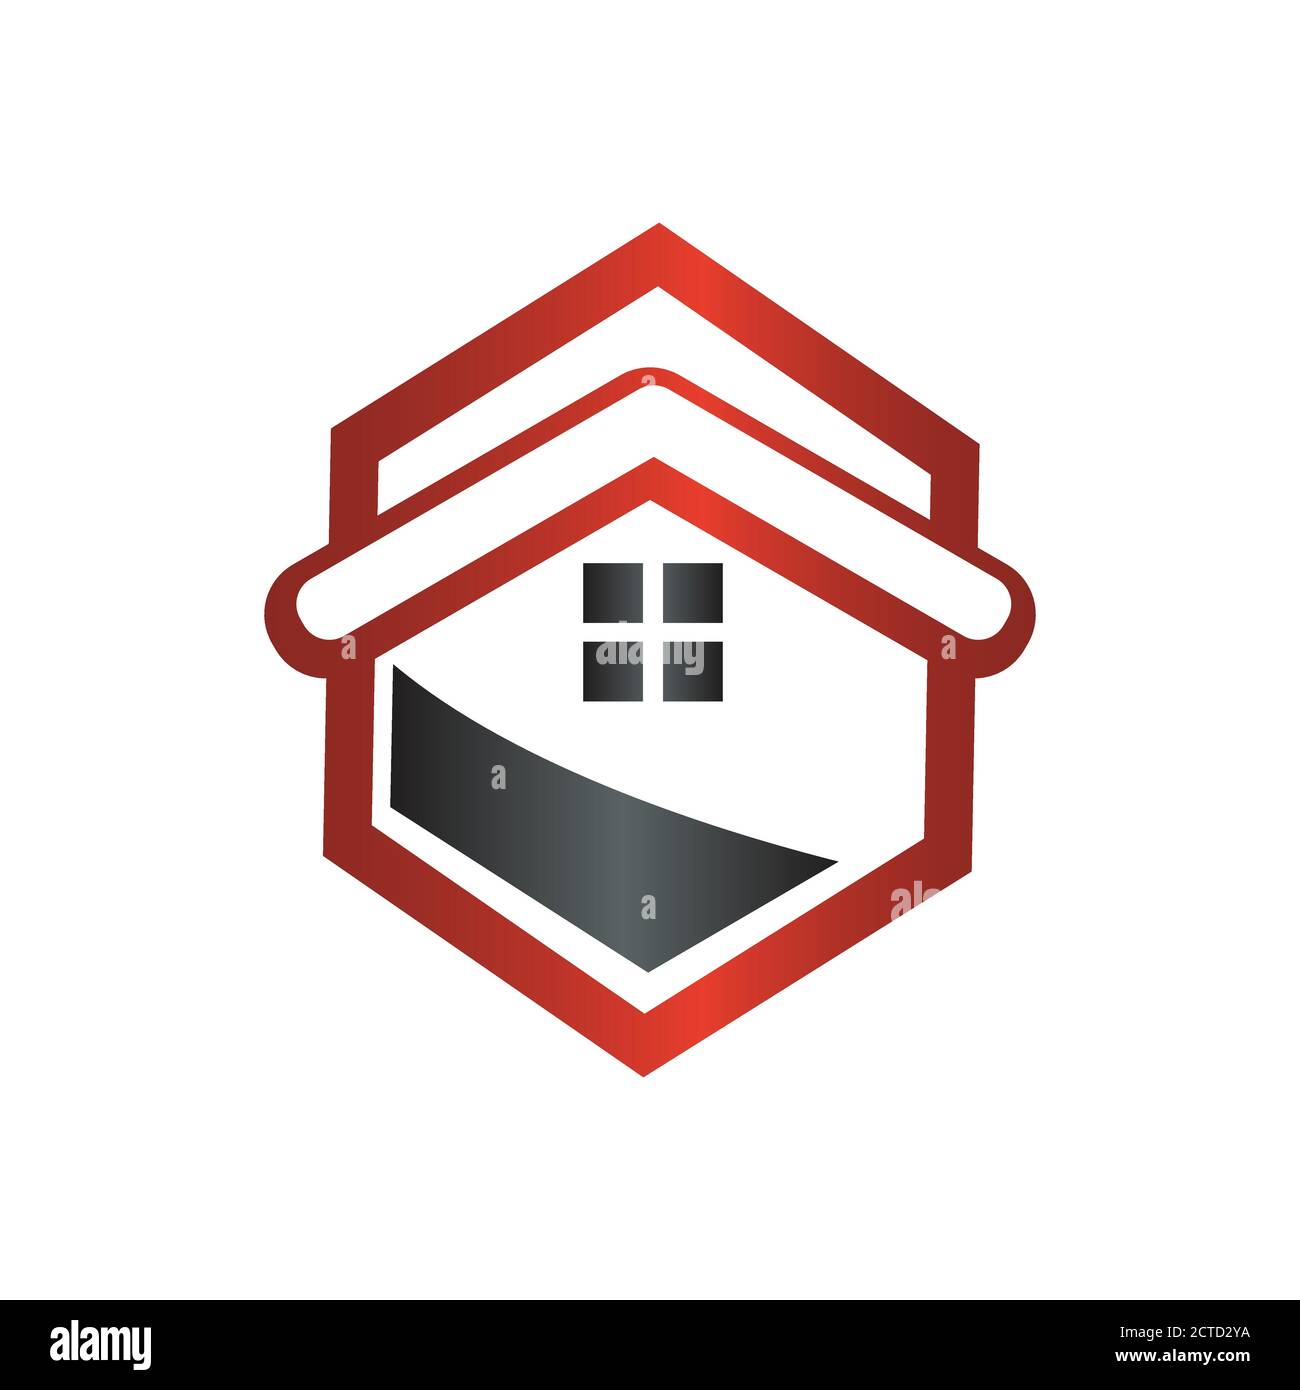 architectural home design logo vector architecture symbol graphic concept Stock Vector